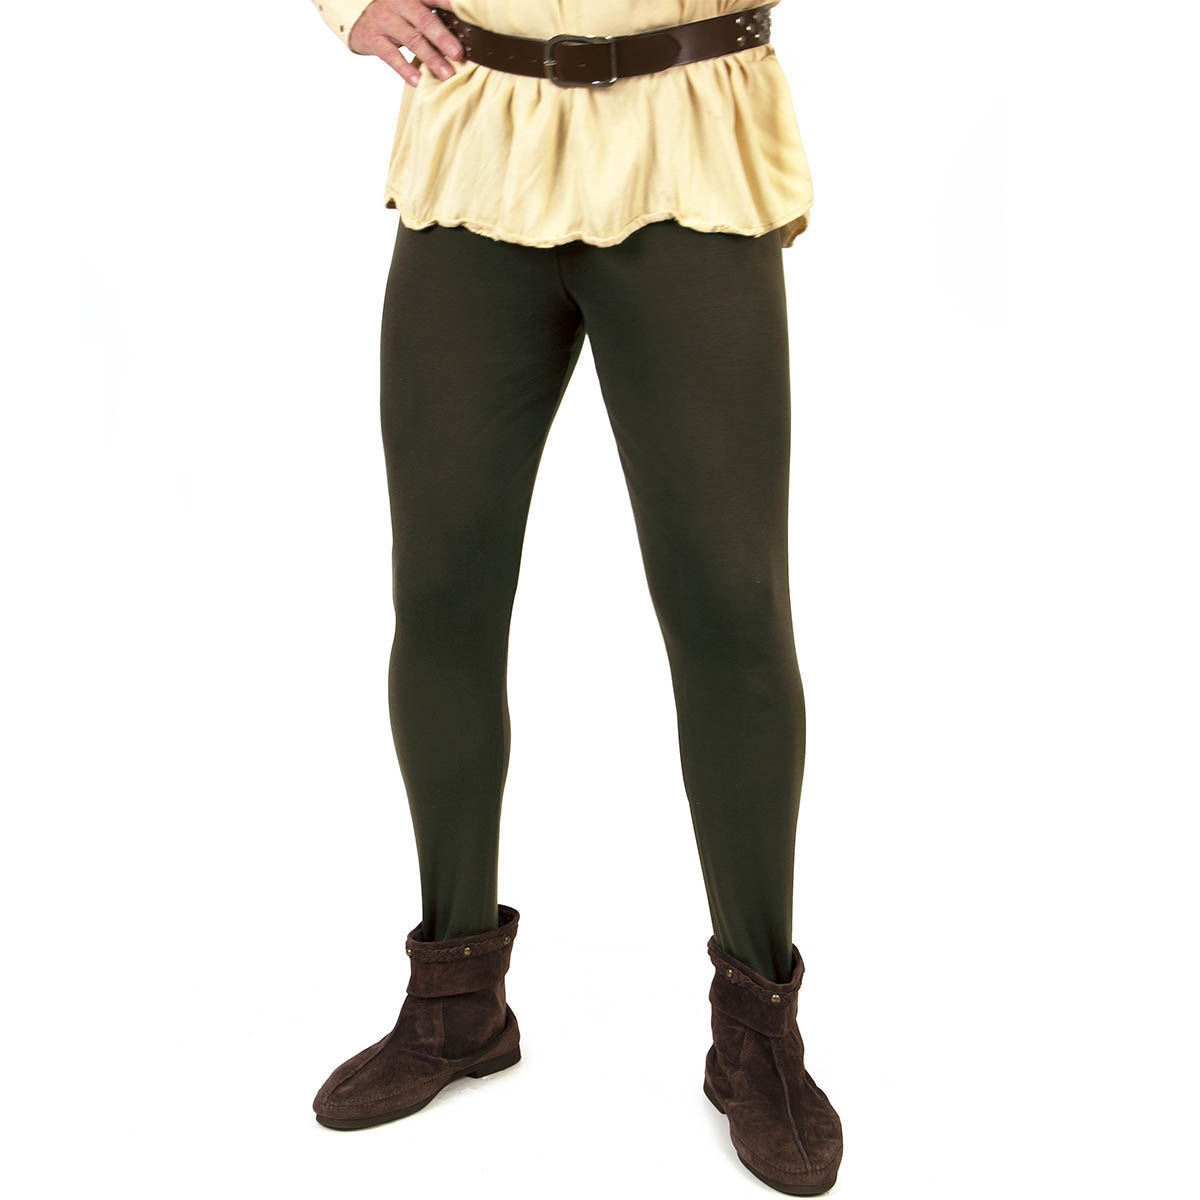 Mittelalterliche Pantalons, Farbe Grün, Größe L